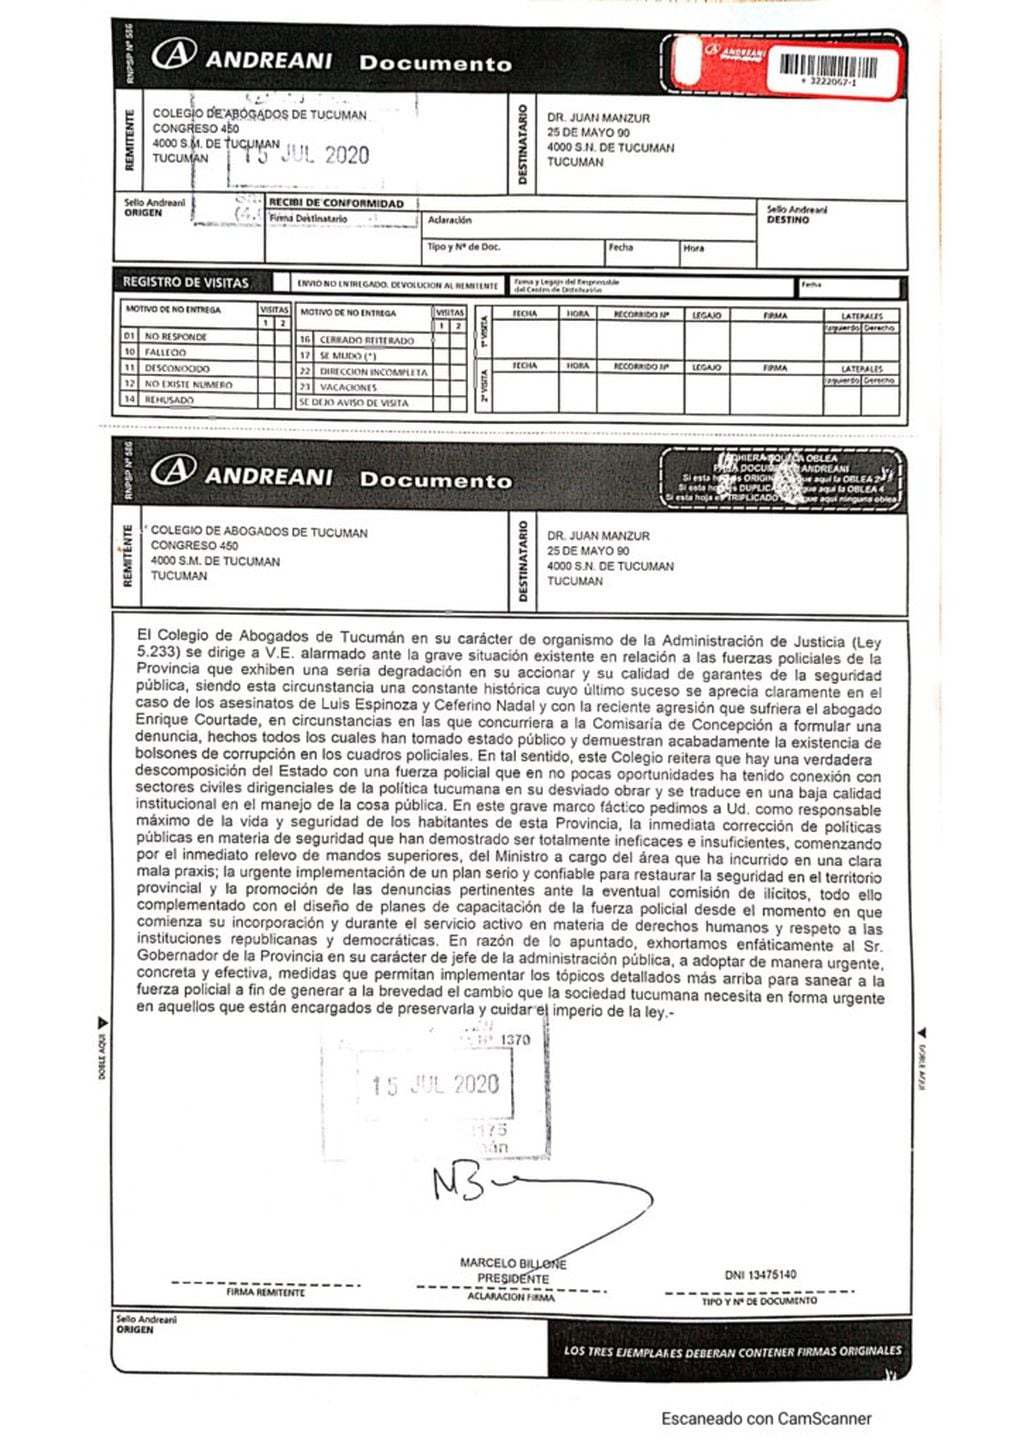 Carta documento solicitando la remoción del ministro de seguridad Claudio Malei.